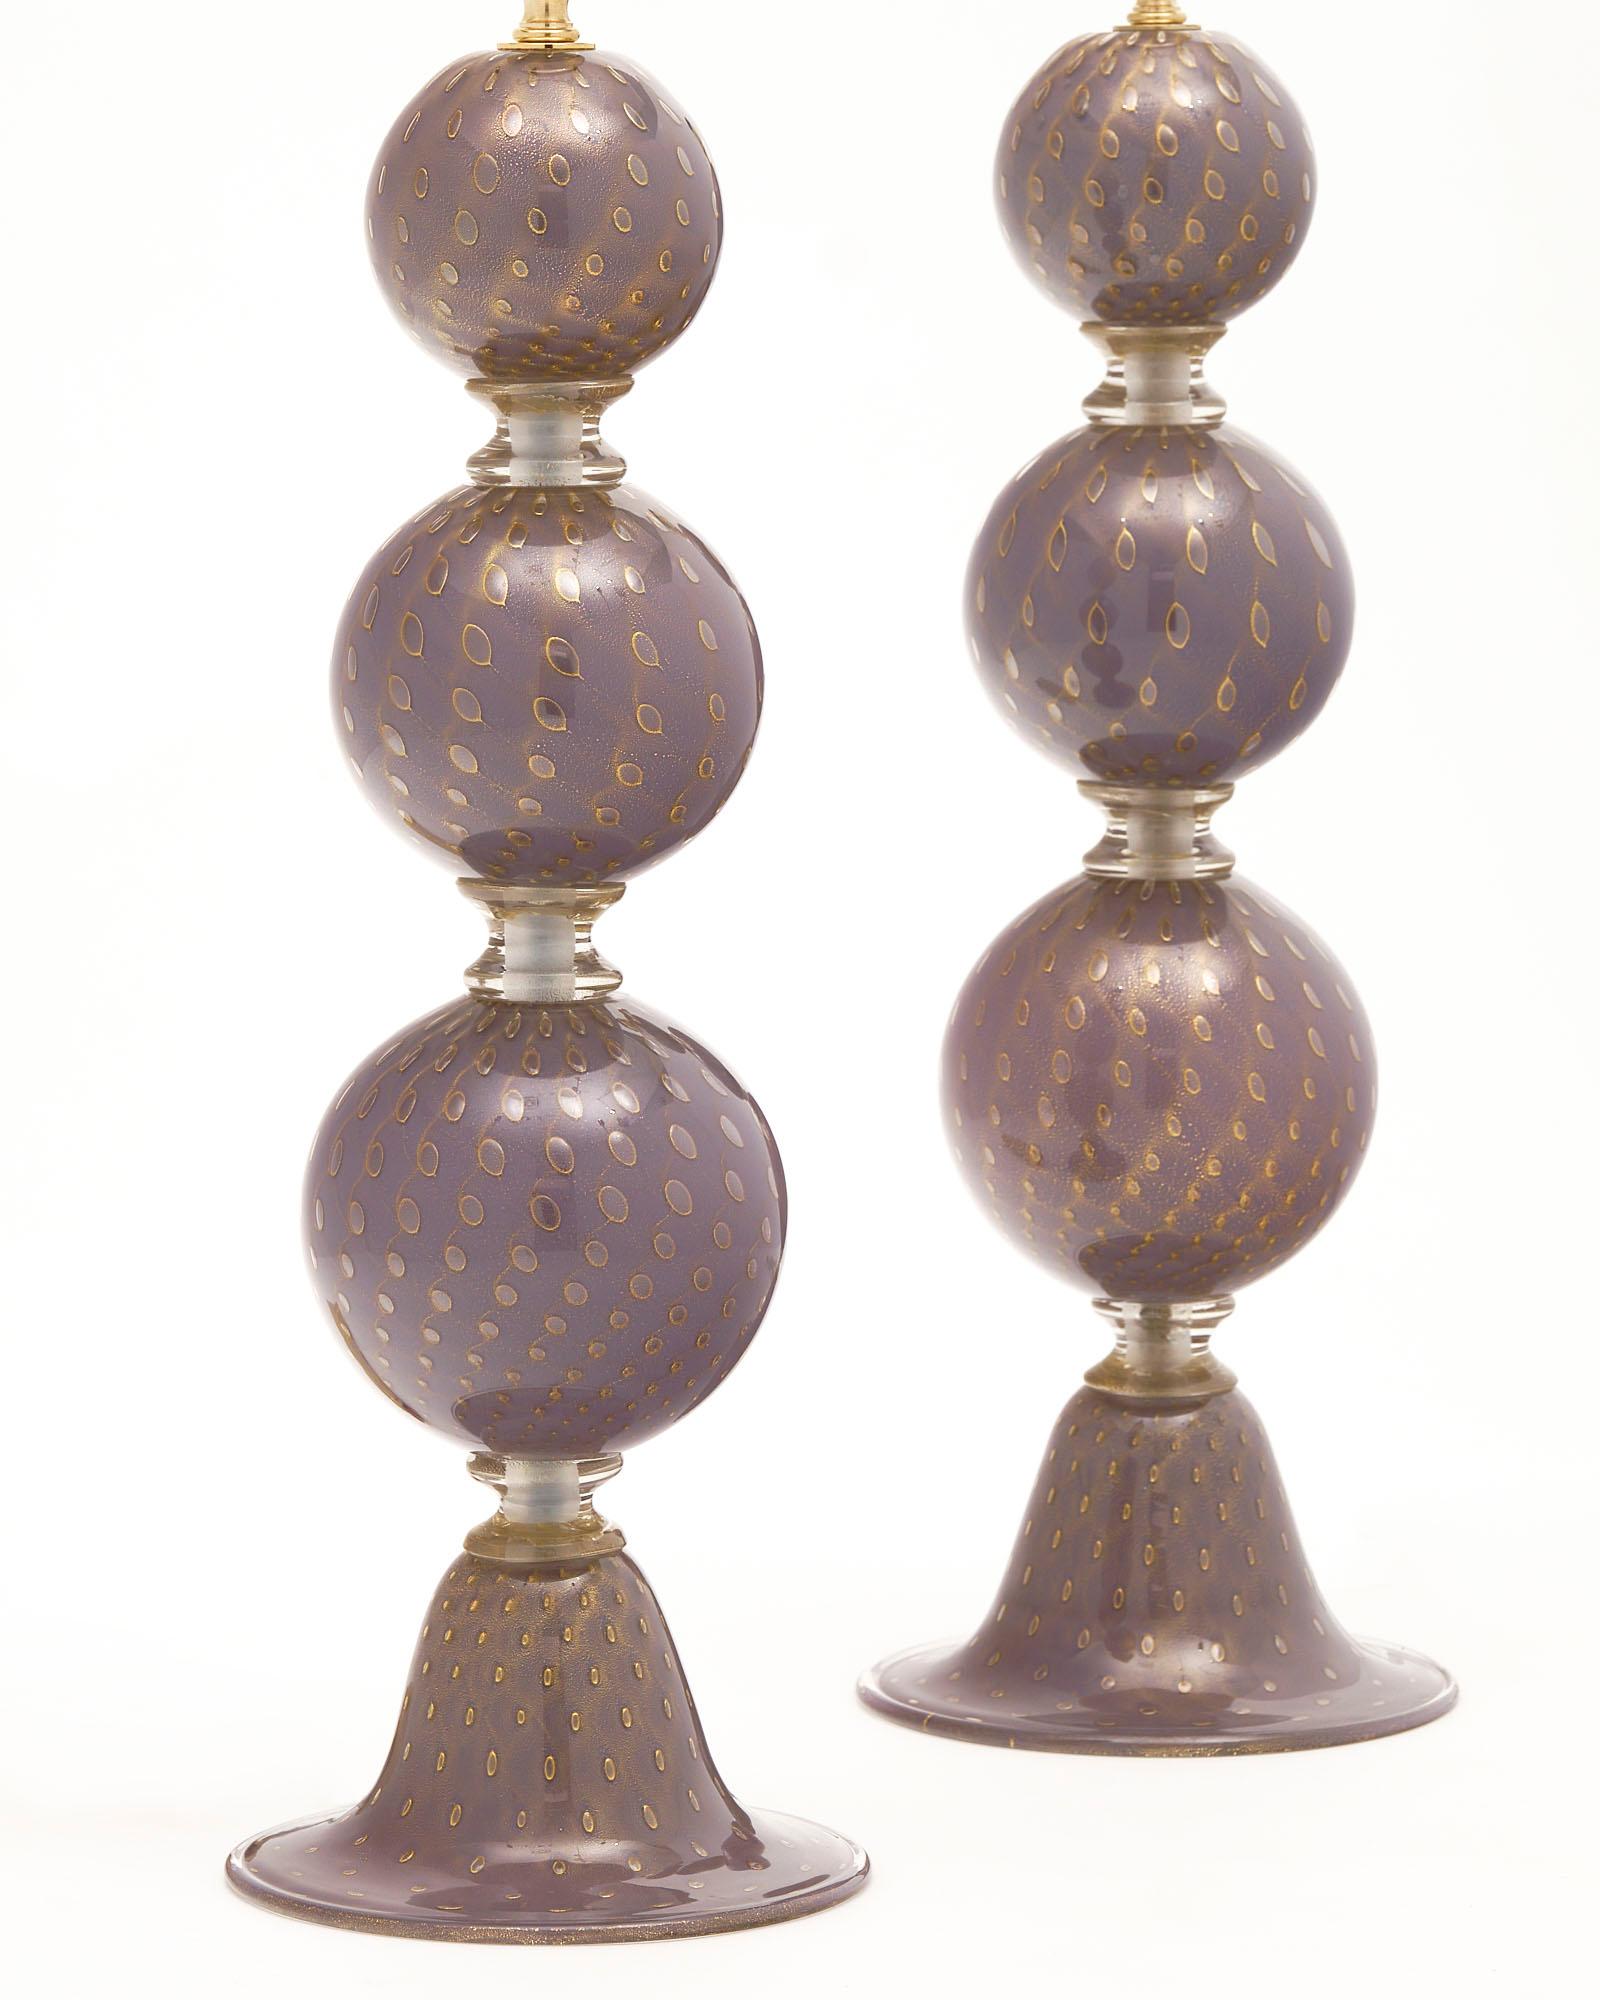 Ein Paar italienische Lampen von der Insel Murano. Dieses Paar besteht aus lila mundgeblasenem Glas. Die gestapelten Kugeln sind durch klare Glasringe getrennt und stehen auf einem konischen Sockel. Das Glas wurde mit 24 Karat Goldblasen